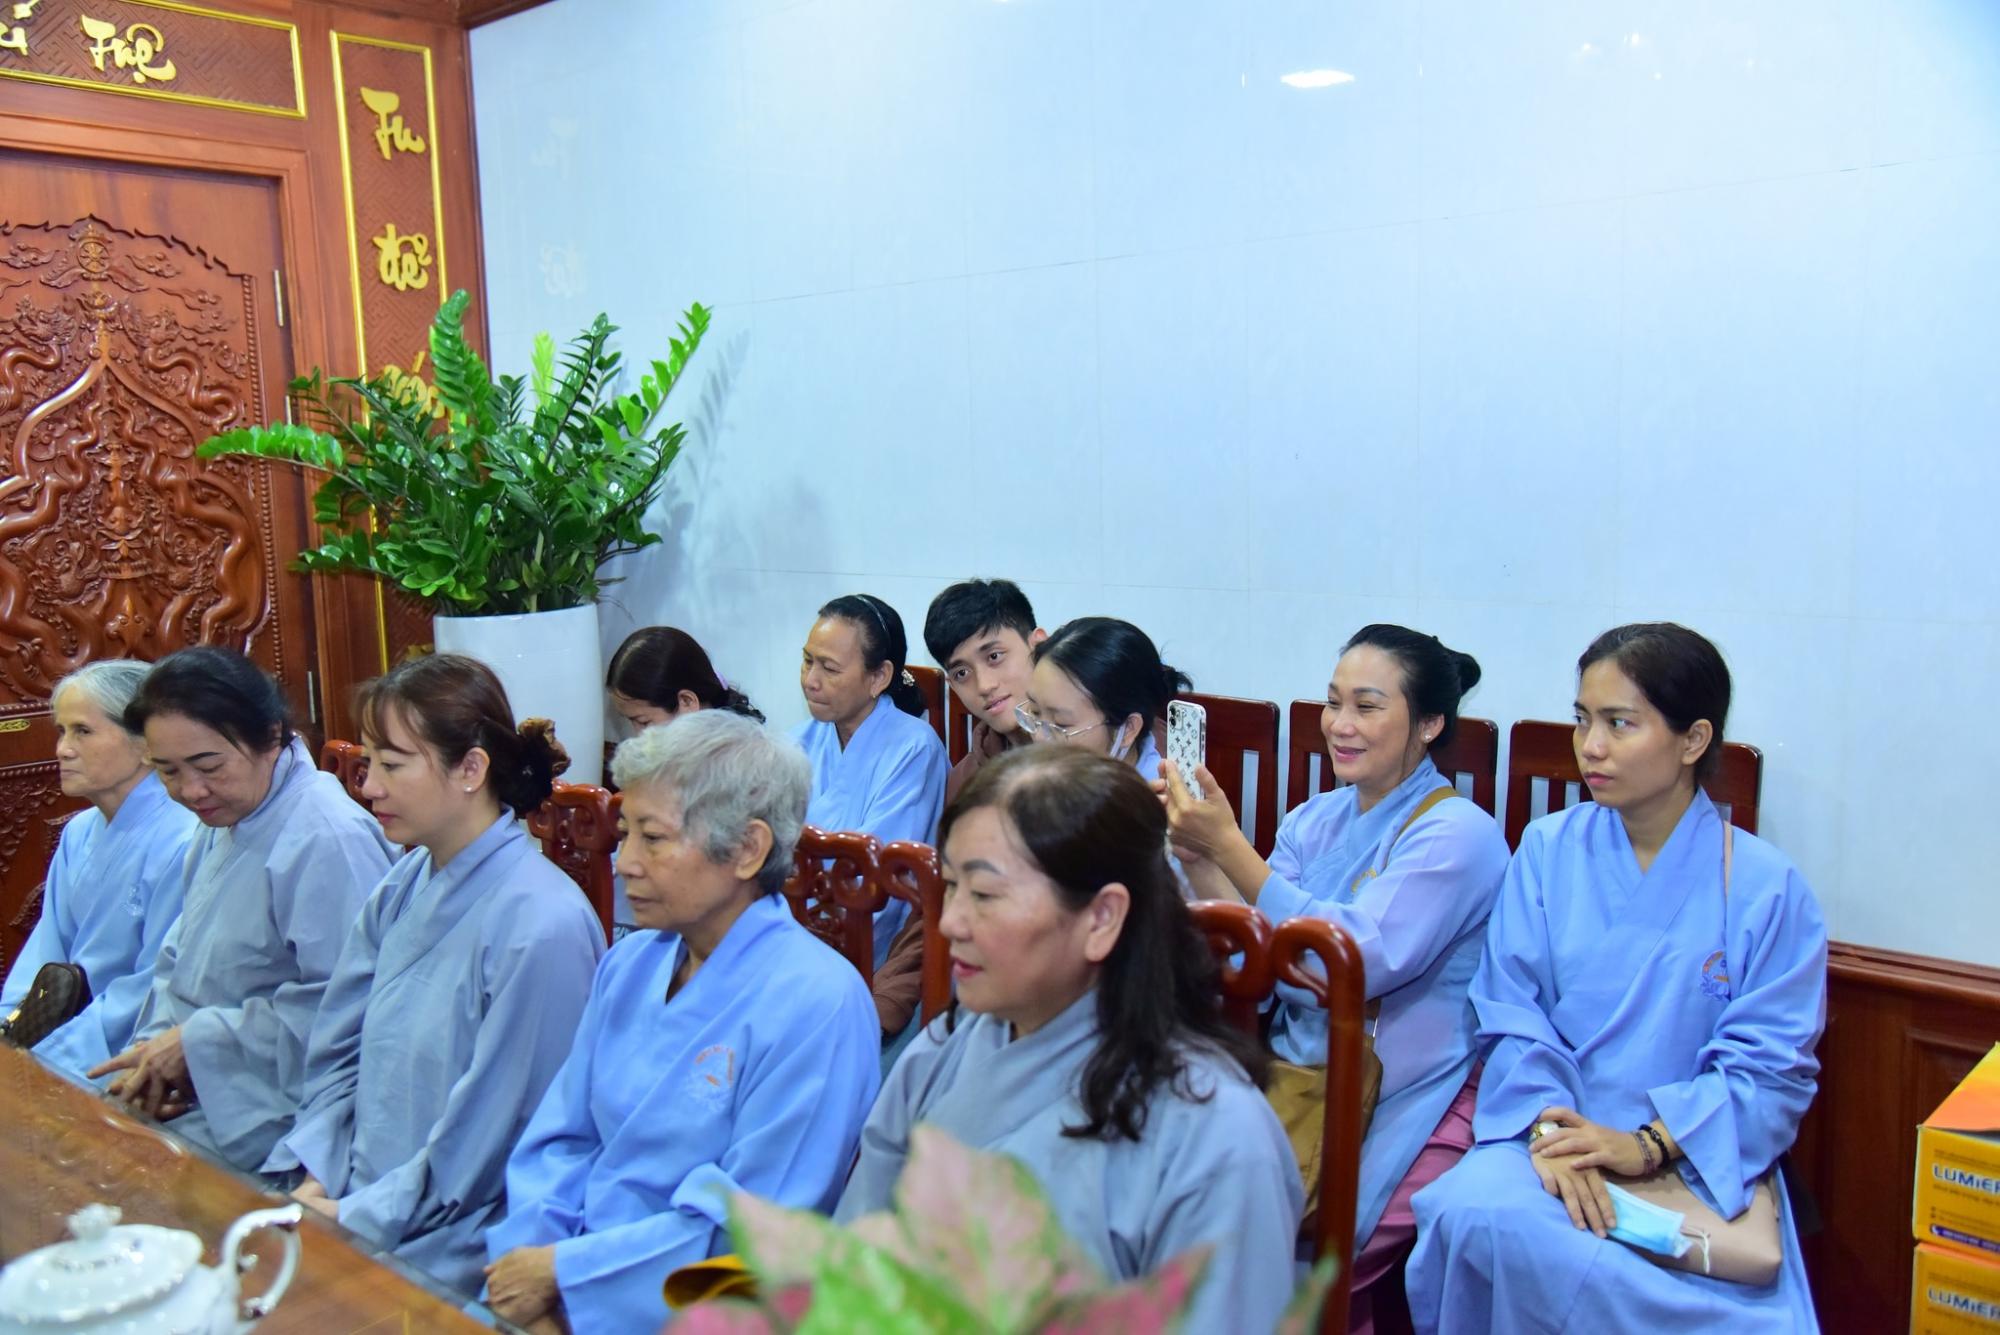 Đoàn hành hương Thiền tự Chính Hoà (Thanh Hóa) thăm chùa Giác Ngộ